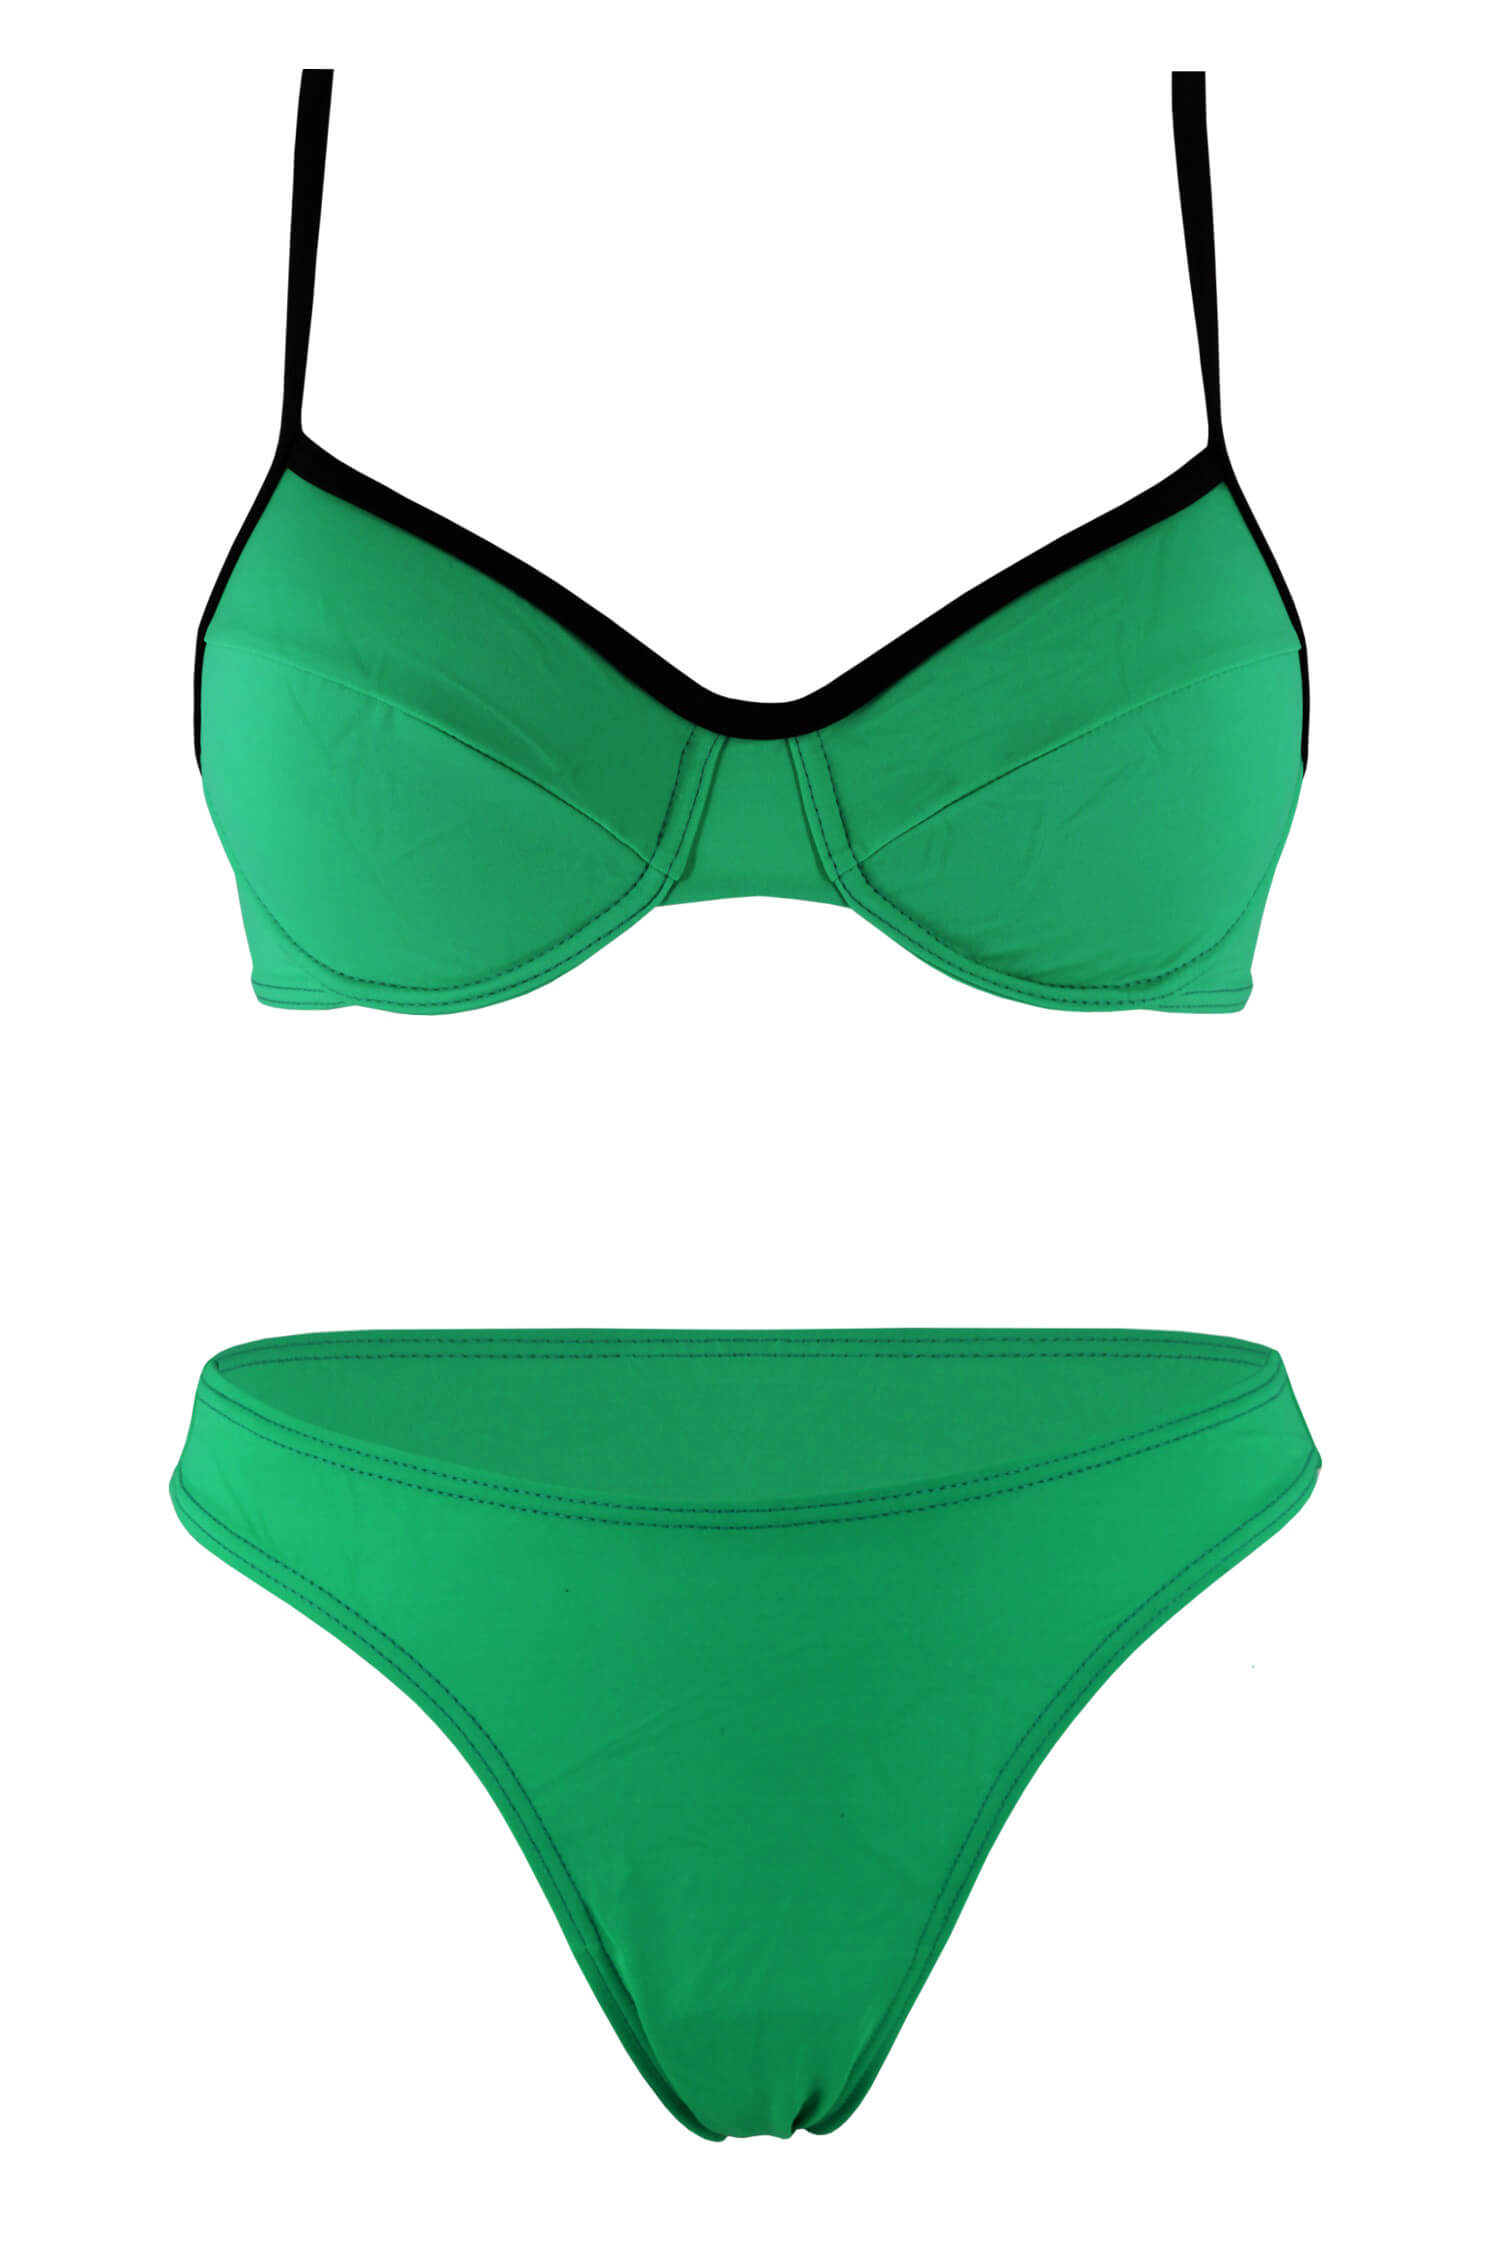 Liduš dámské dvoudílné plavky bez výztuže M zelená